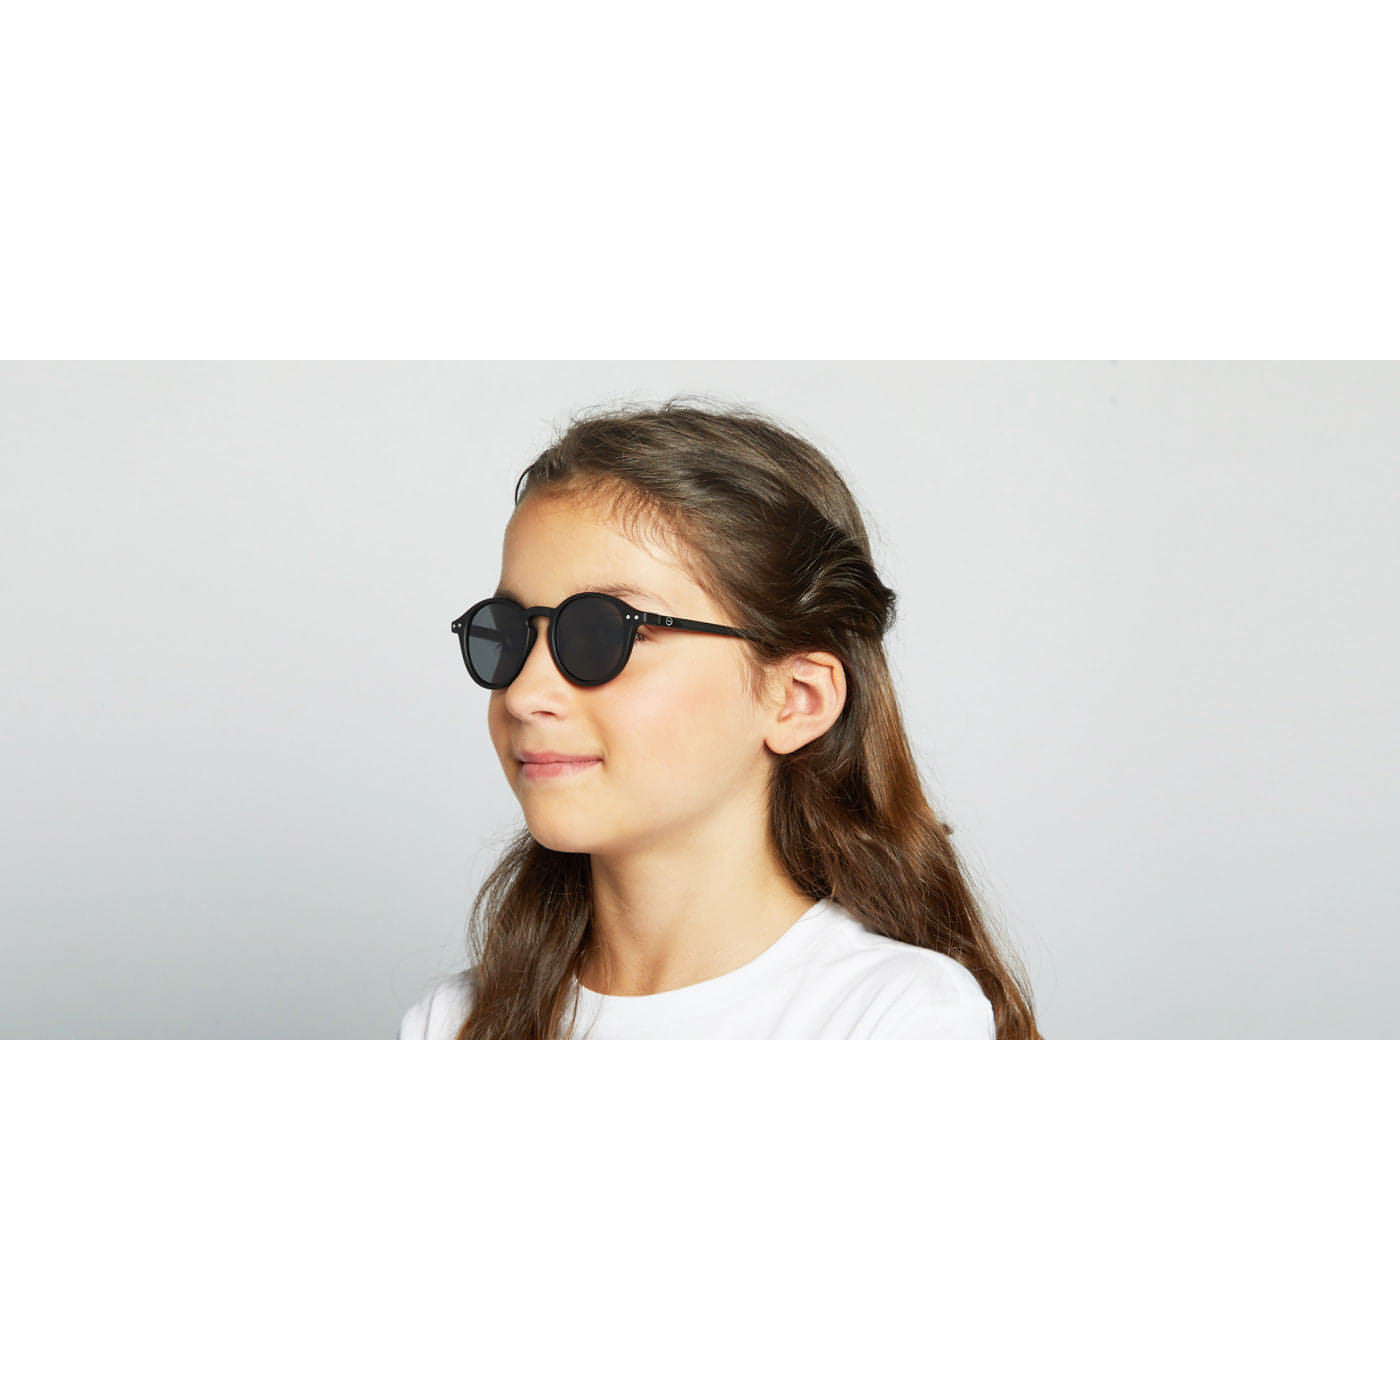 Óculos de Sol Black #D para crianças dos 5 aos 10 anos